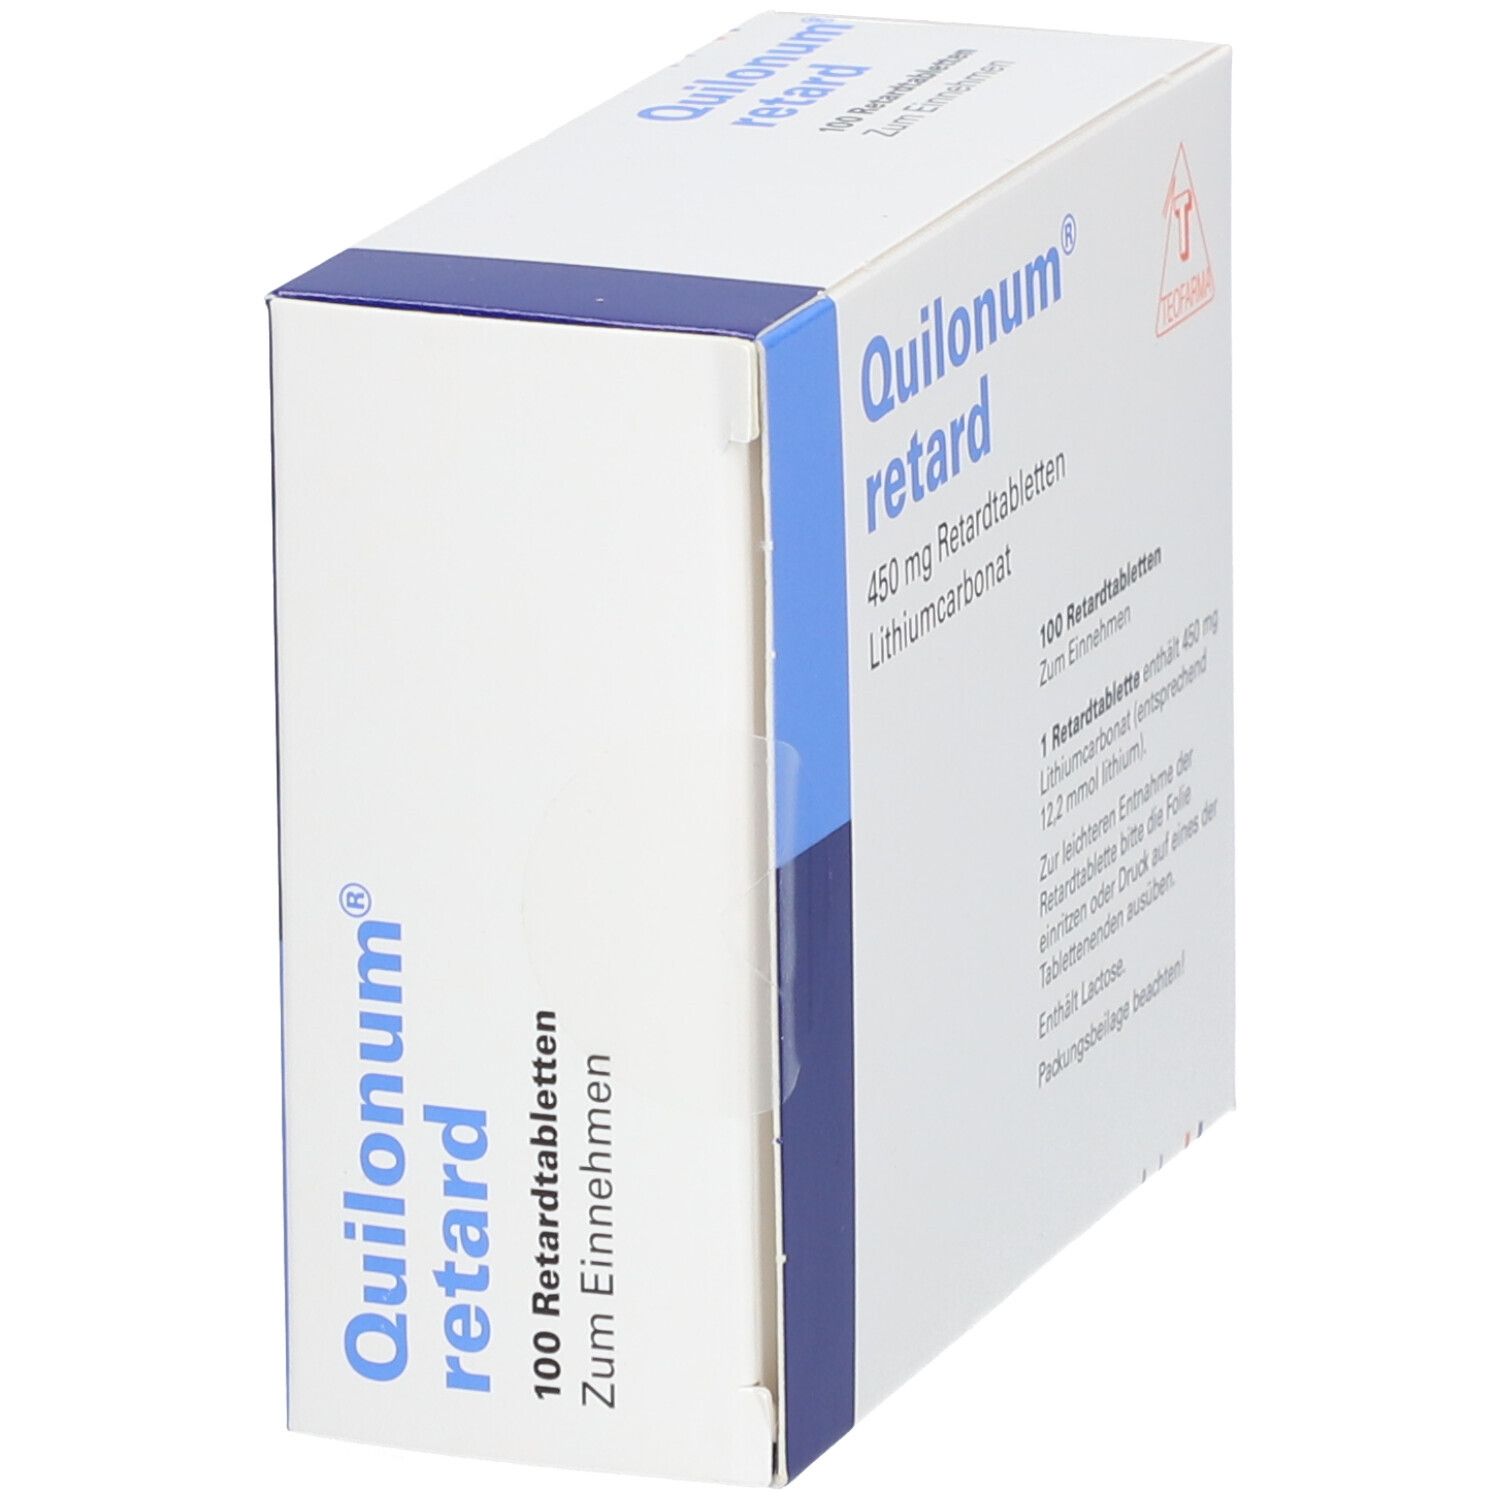 Quilonum® retard 450 mg